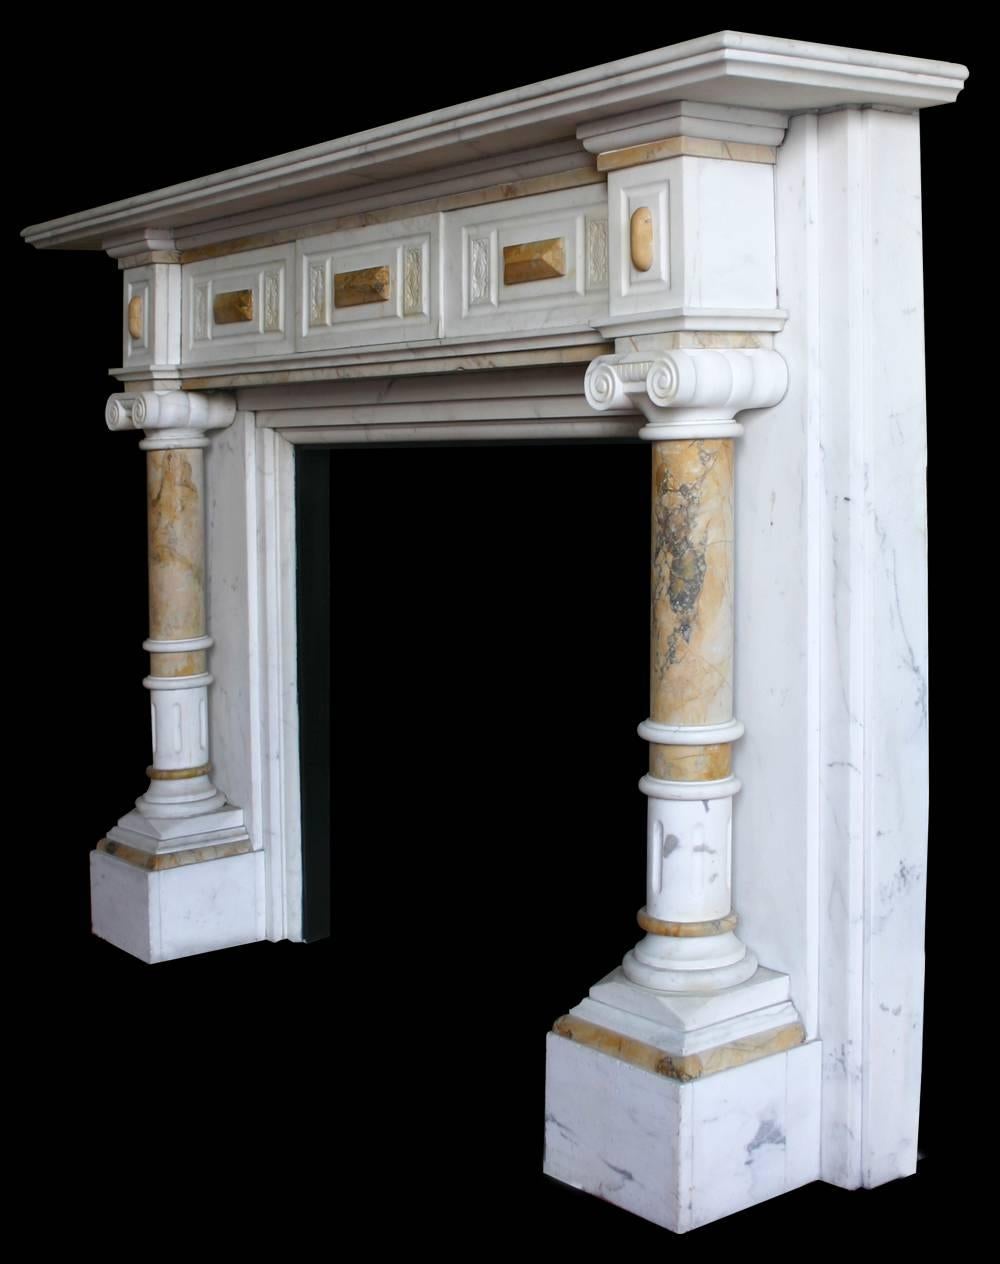 Sehr imposante antike spätviktorianische Kaminumrandung aus weißem Marmor mit Säulen aus Siena-Marmor, die quadratische Kapitelle tragen, und einem Fries, der mit Rauten aus Siena-Marmor und geschnitzten Platten verziert ist,

um 1880.

Bilder